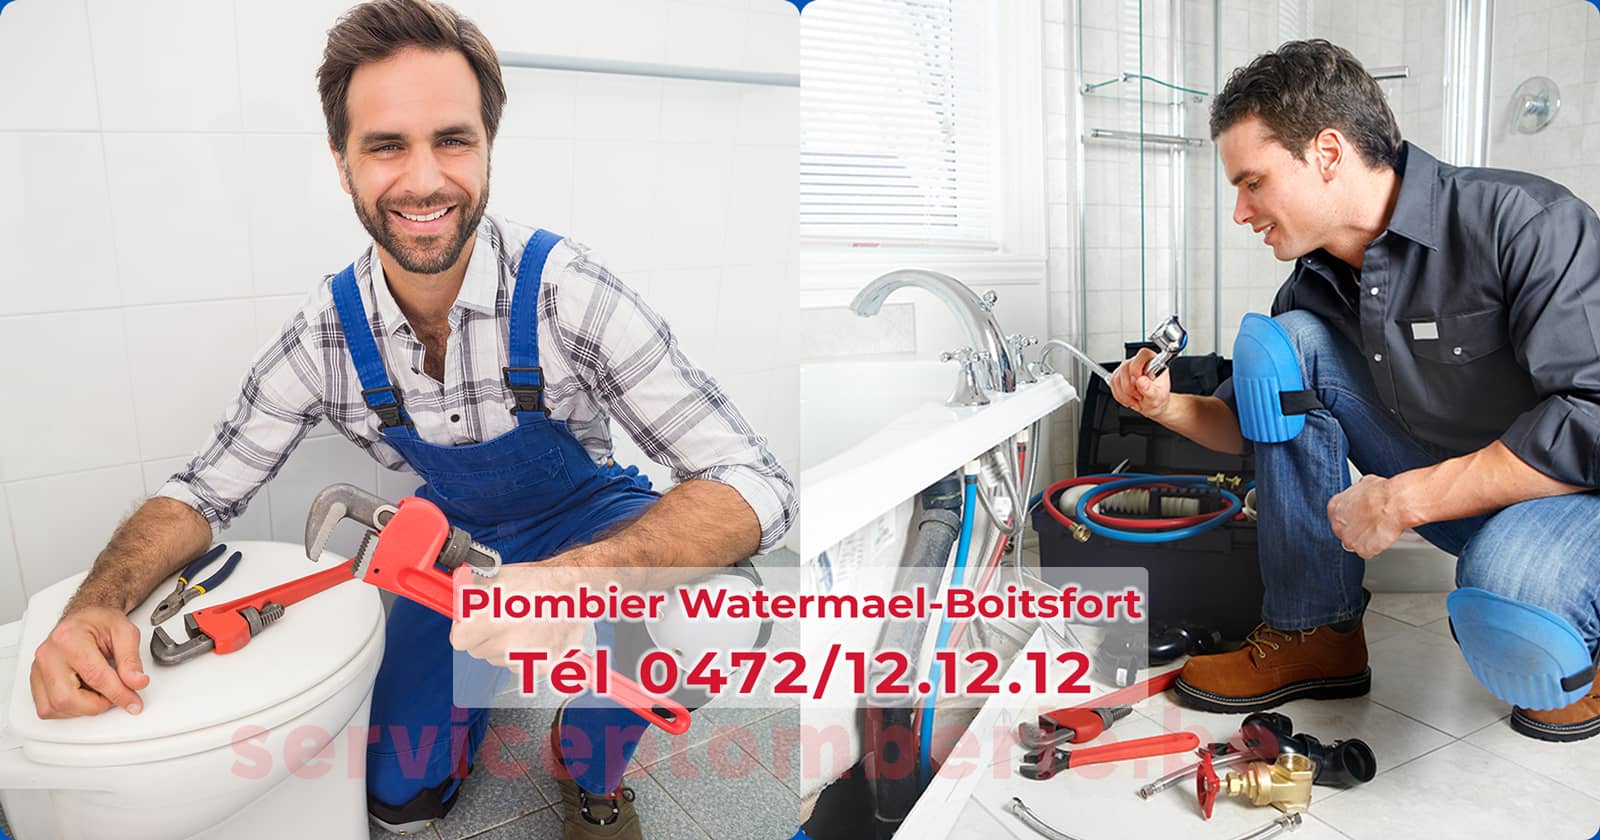 Plombier Watermael-Boitsfort Agréé Professionnel Service Plomberie Tél 0472/12.12.12